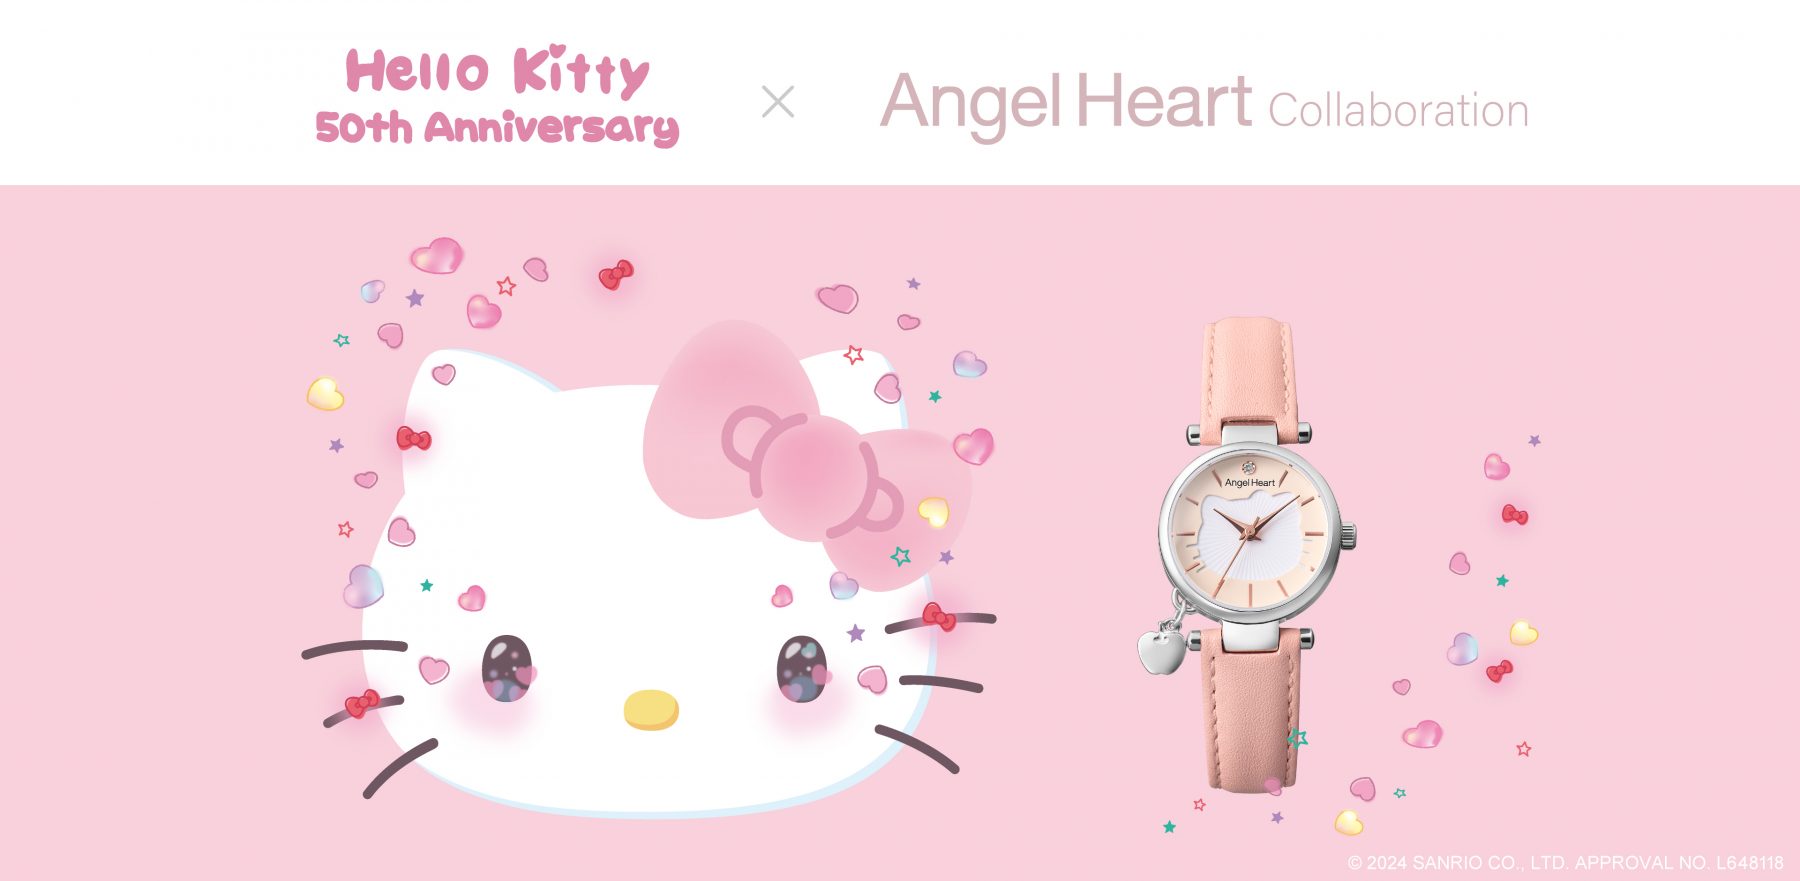 ブランド設立20周年を記念して、誕生50周年となる『Hello Kitty』との 